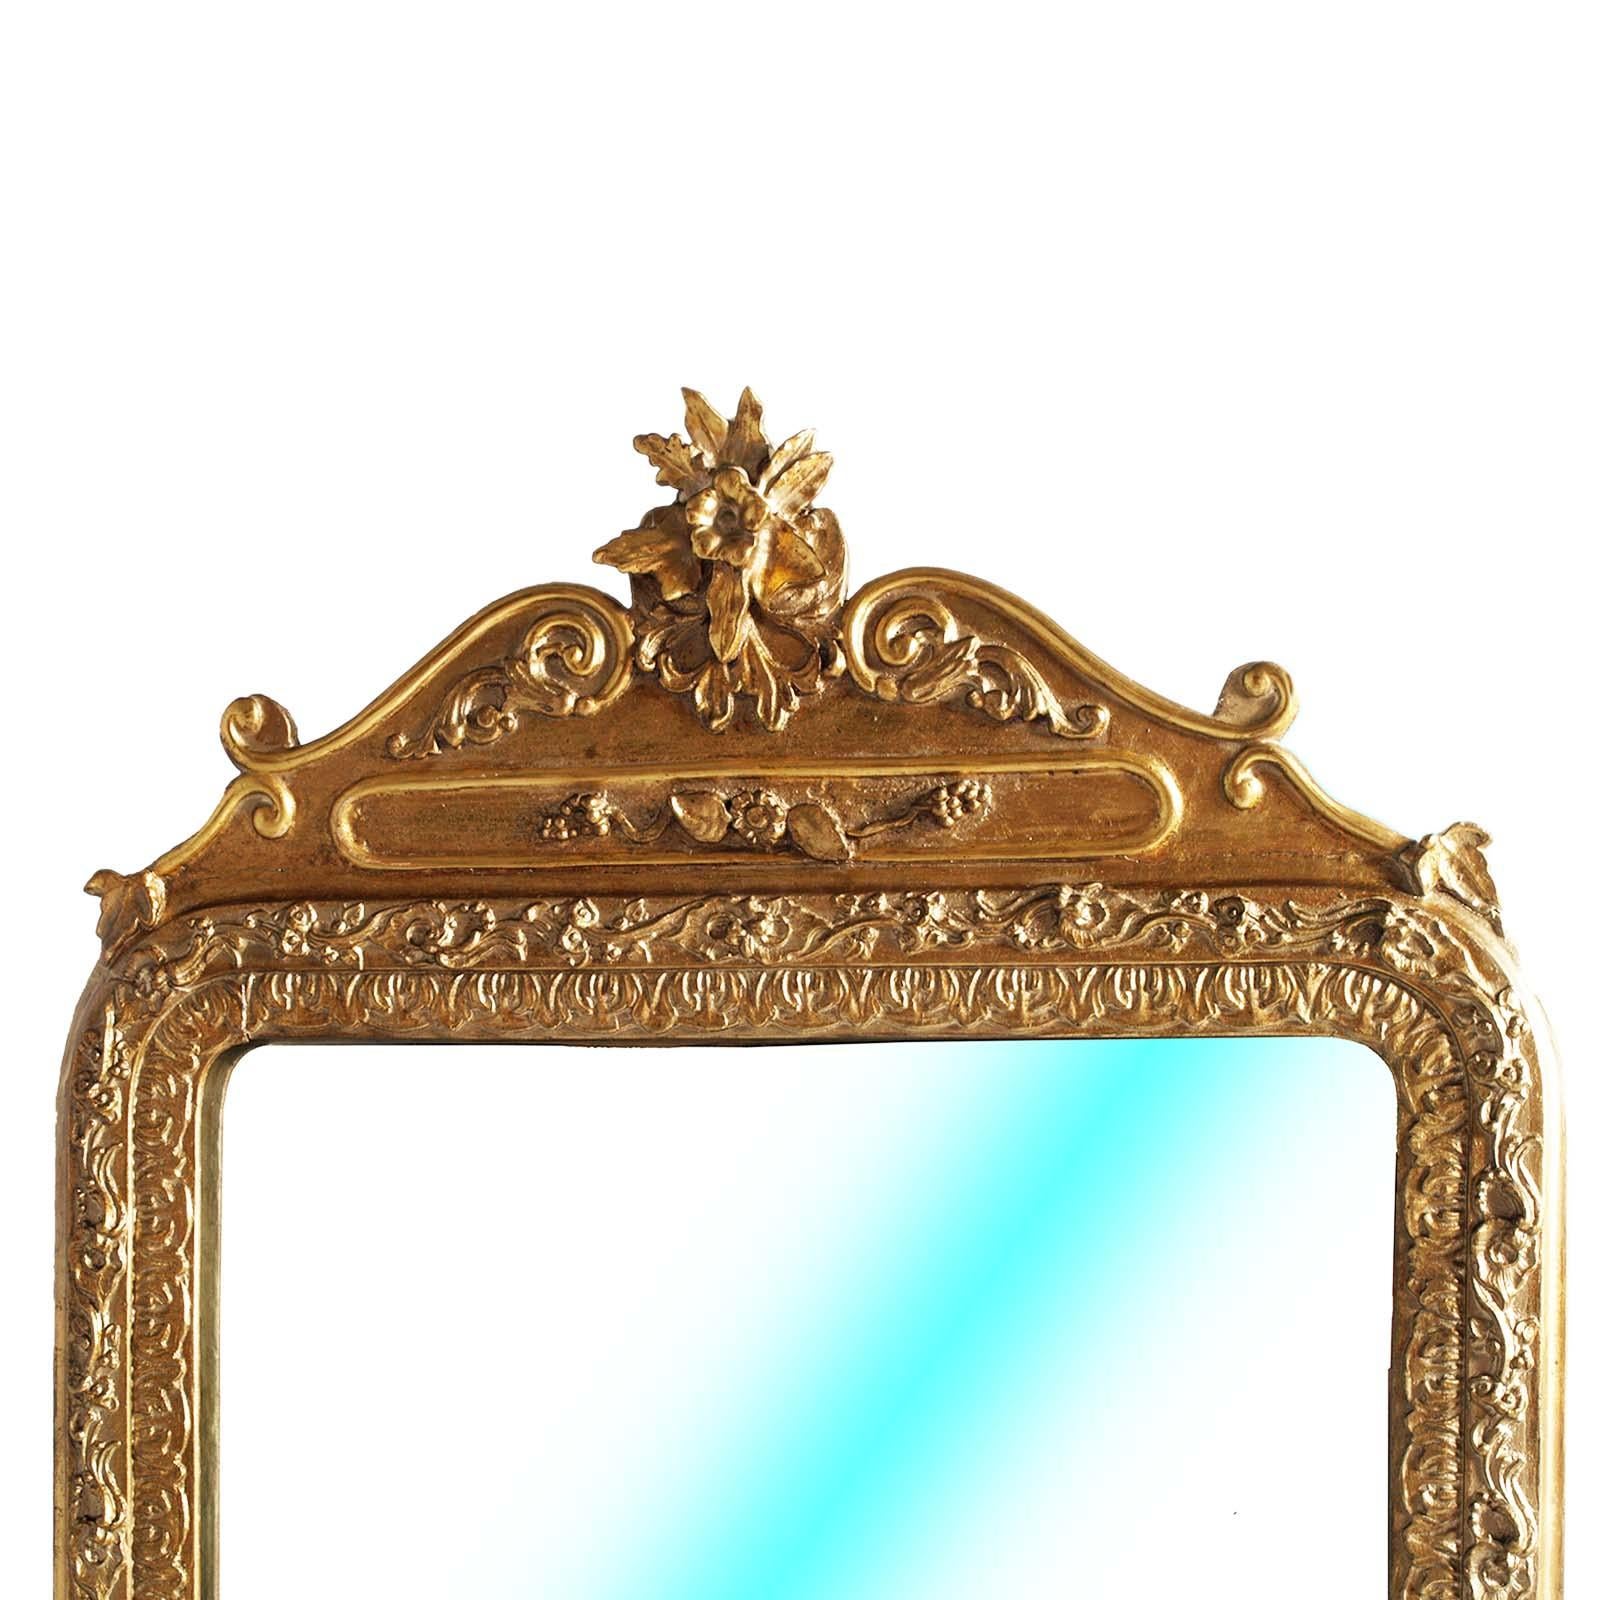 Abuot ce Miroir
Miroir attribuable à l'école d'Andrea Brustolon
Ce miroir d'époque Louis XIV présente des motifs sculptés riches et diffus d'une grande élégance. Ce sont les motifs floraux, les feuilles d'acanthe, les motifs géométriques. Tout est